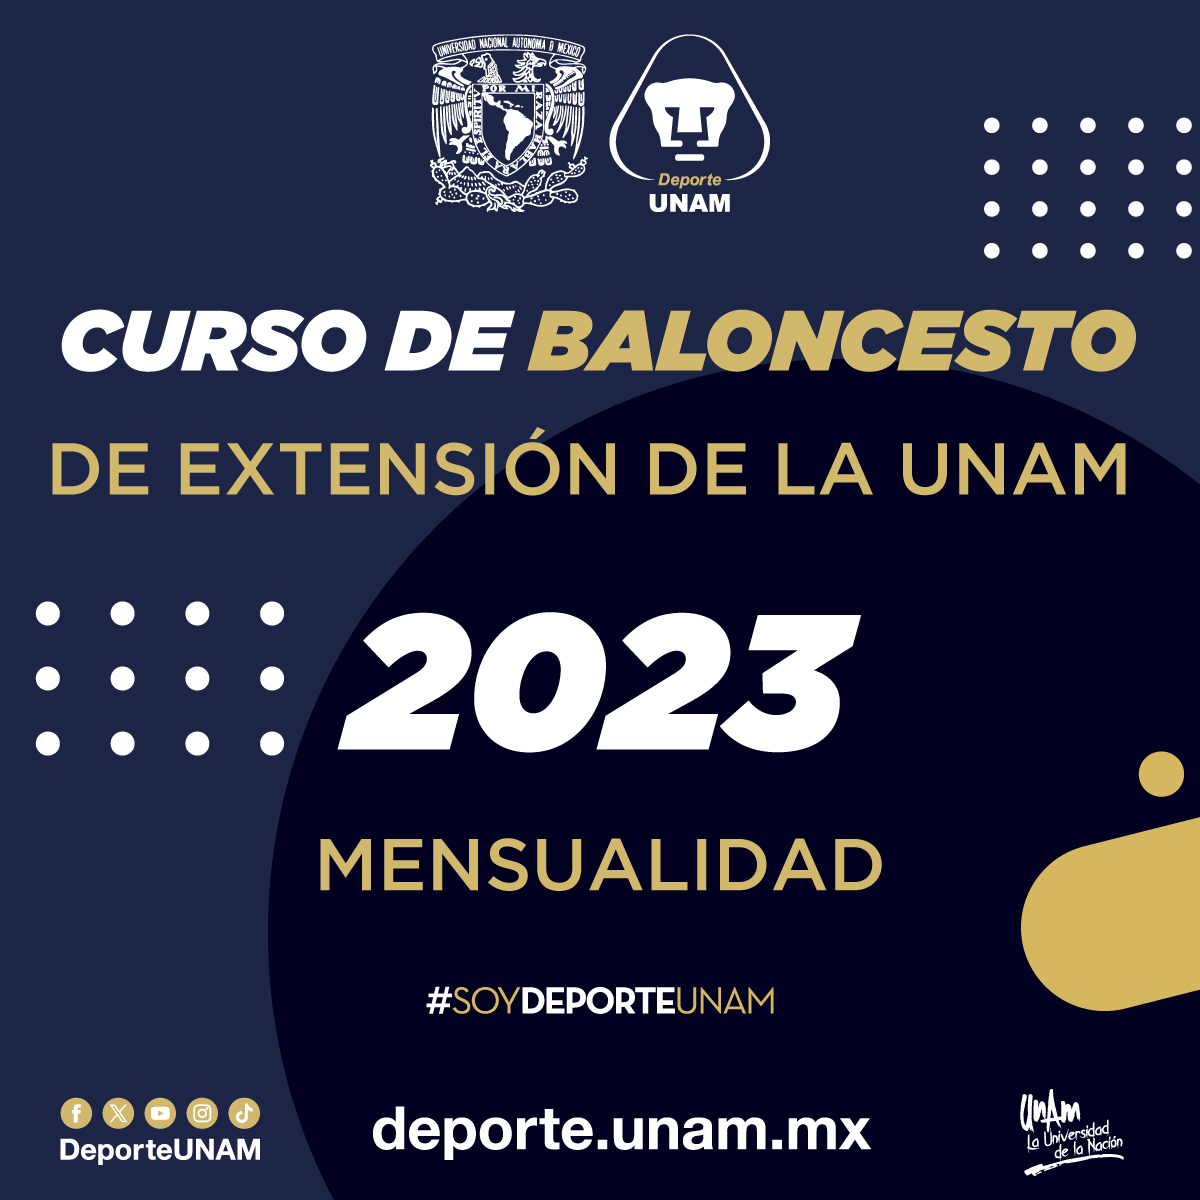 CURSO DE BALONCESTO DE EXTENSIÓN DE LA UNAM 2023 MENSUALIDAD